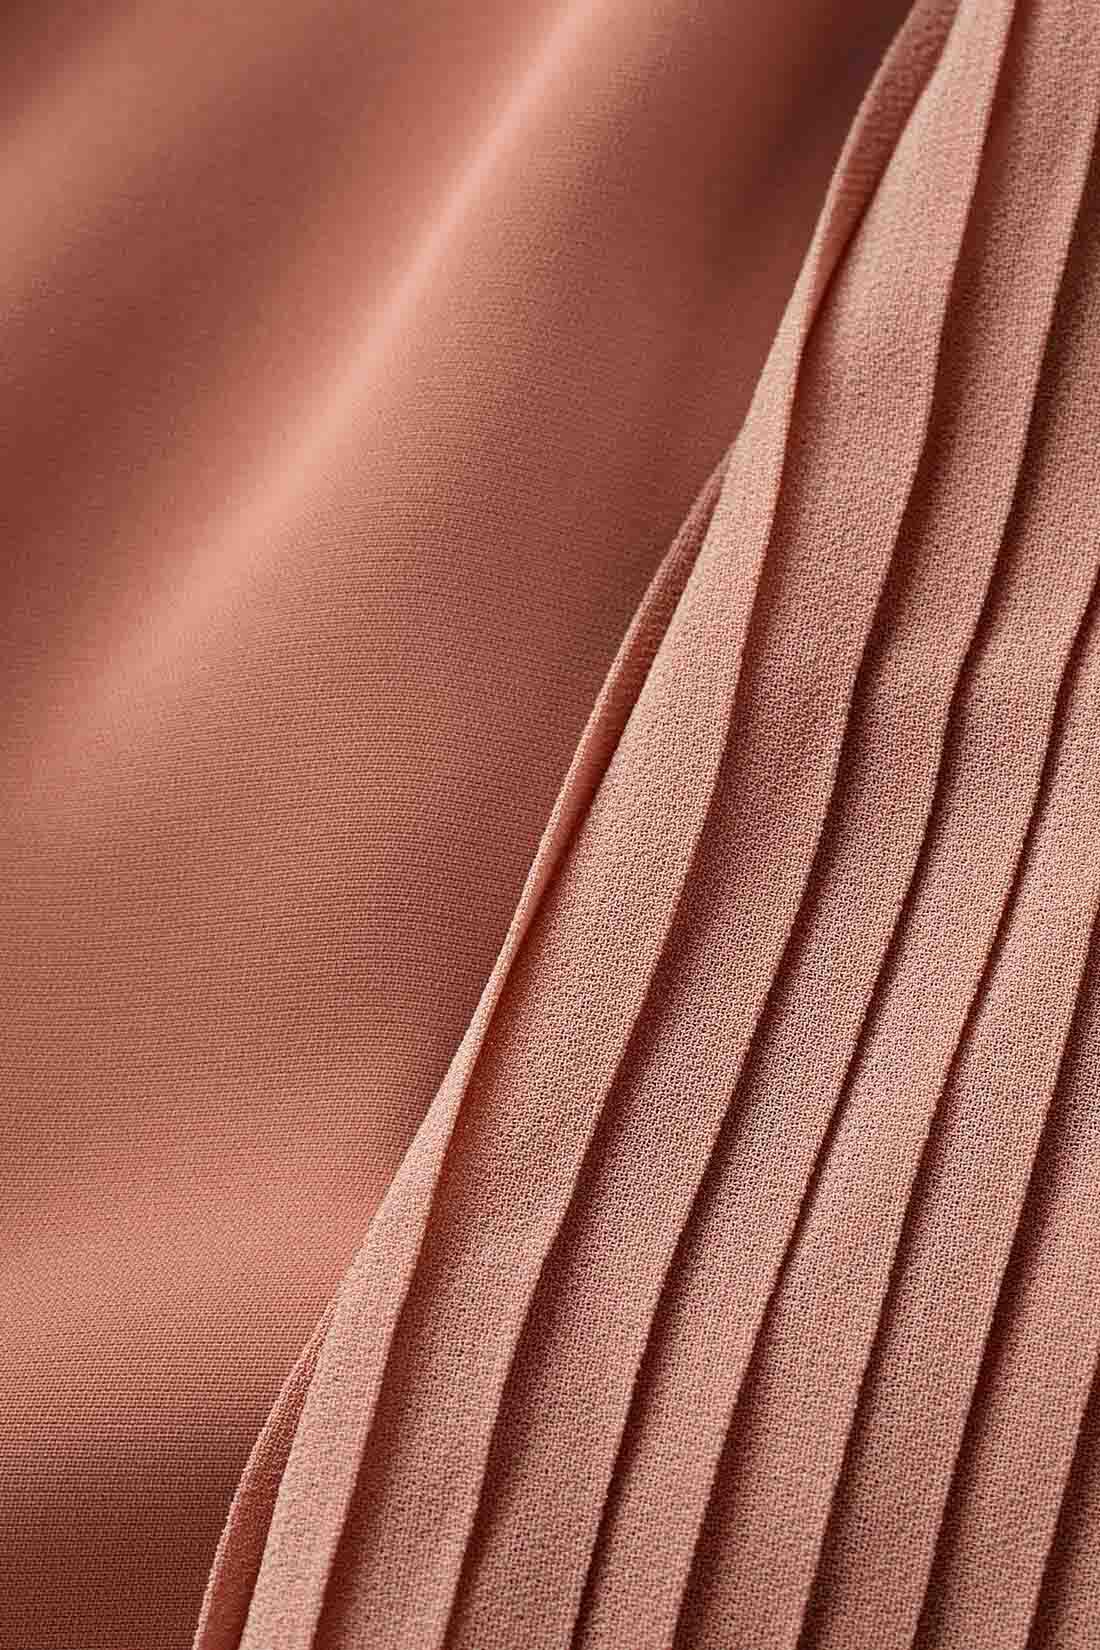 IEDIT|IEDIT[イディット]　袖プリーツが繊細なボウタイデザインブラウス〈ネイビー〉|マットなポリエステル素材とシフォンプリーツの軽やかな薄手素材の組み合わせ。 ※お届けするカラーとは異なります。